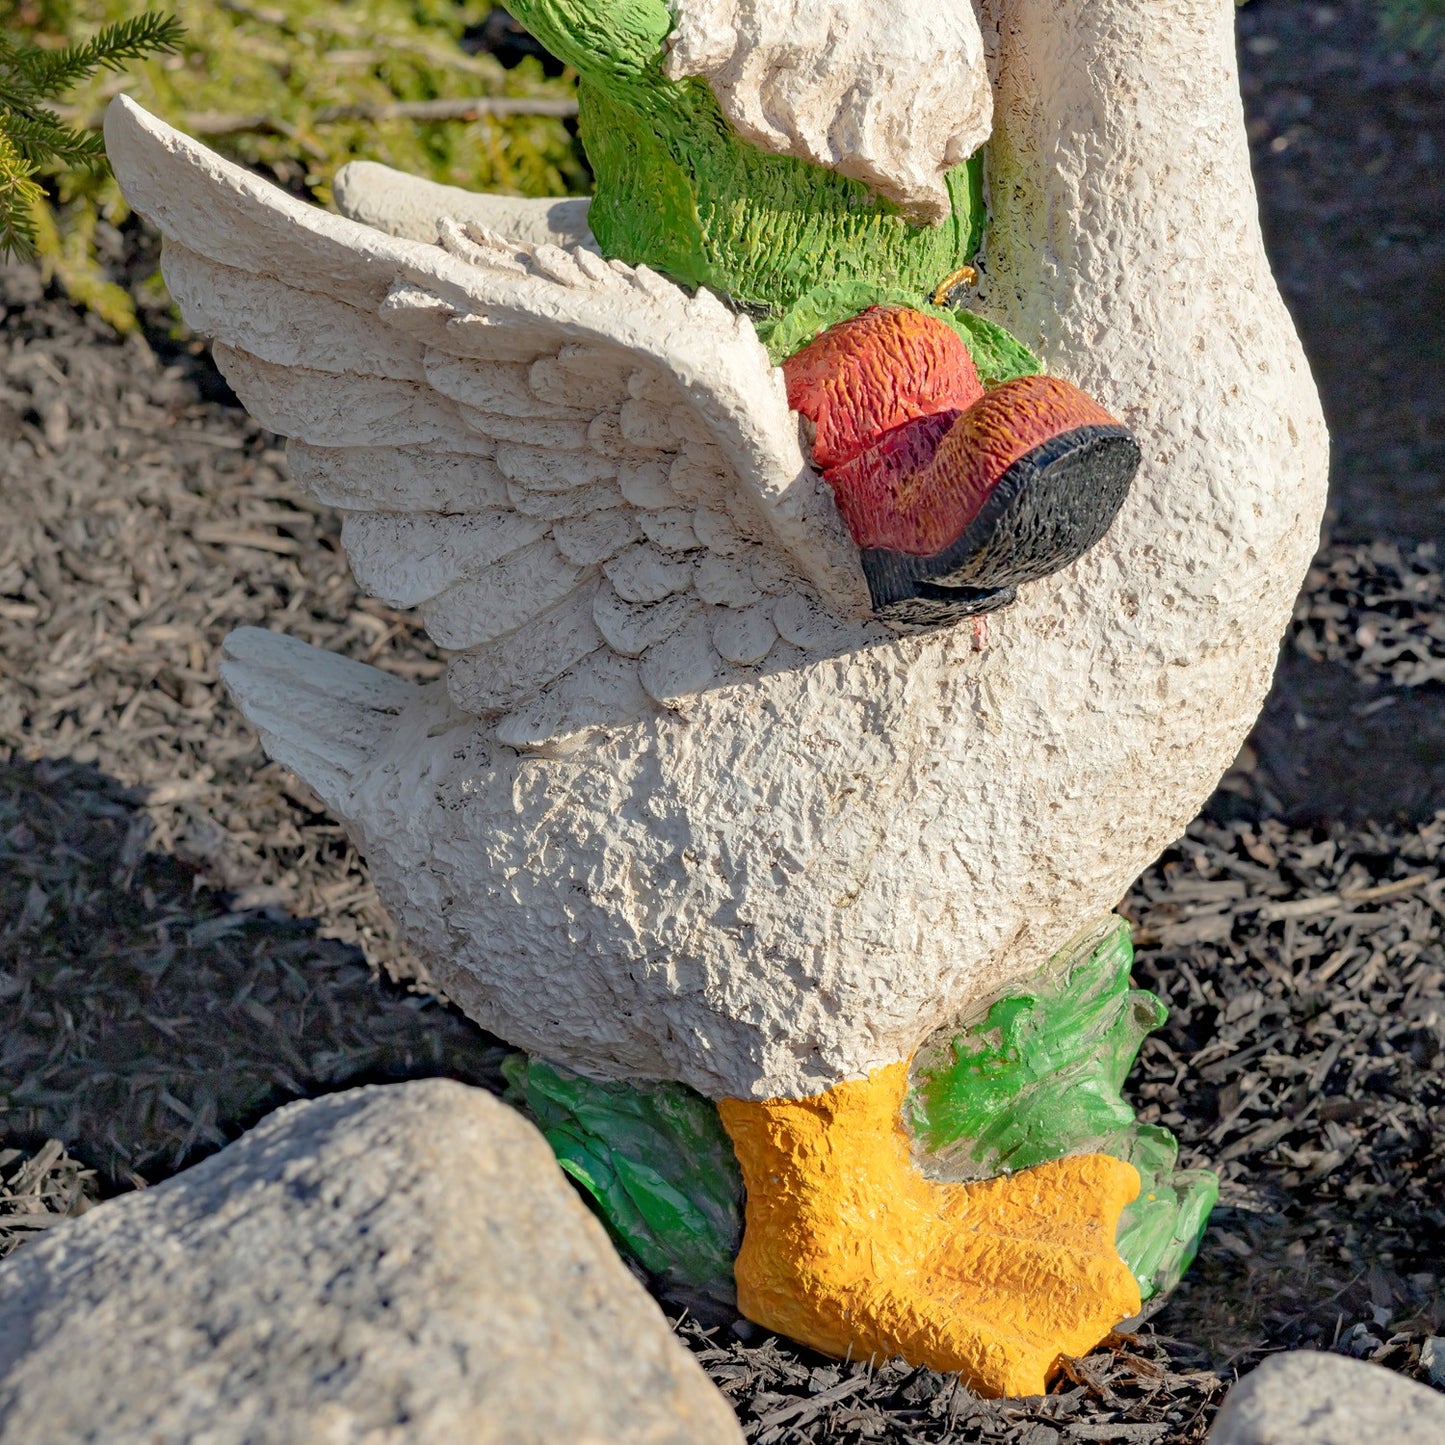 23" Tall Spring Gnome Garden Statue Riding a Duck